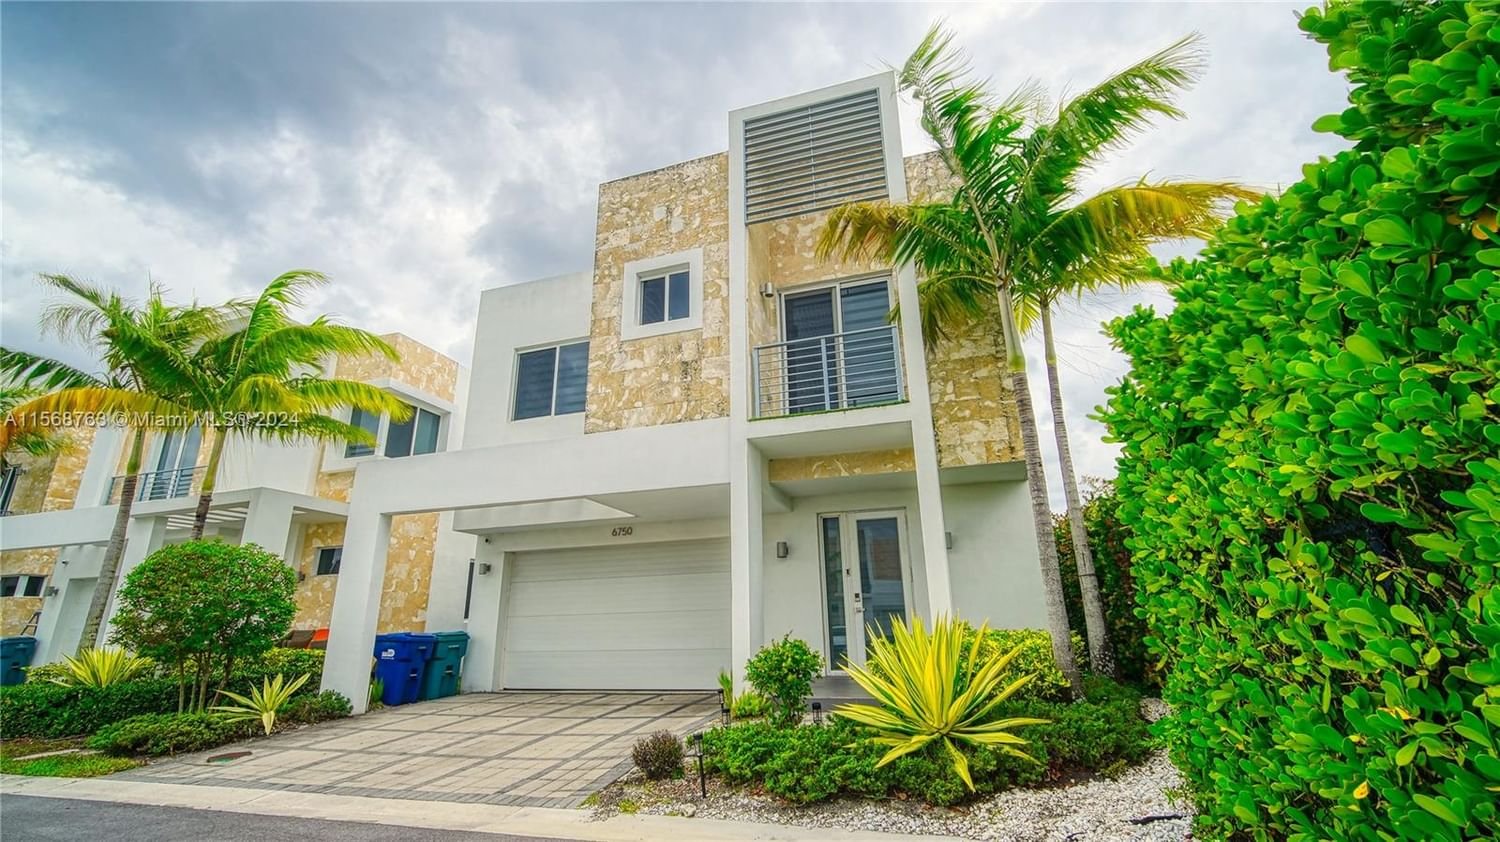 Real estate property located at 6750 103rd Ave, Miami-Dade County, Neovita Estates/ Vesta, Doral, FL